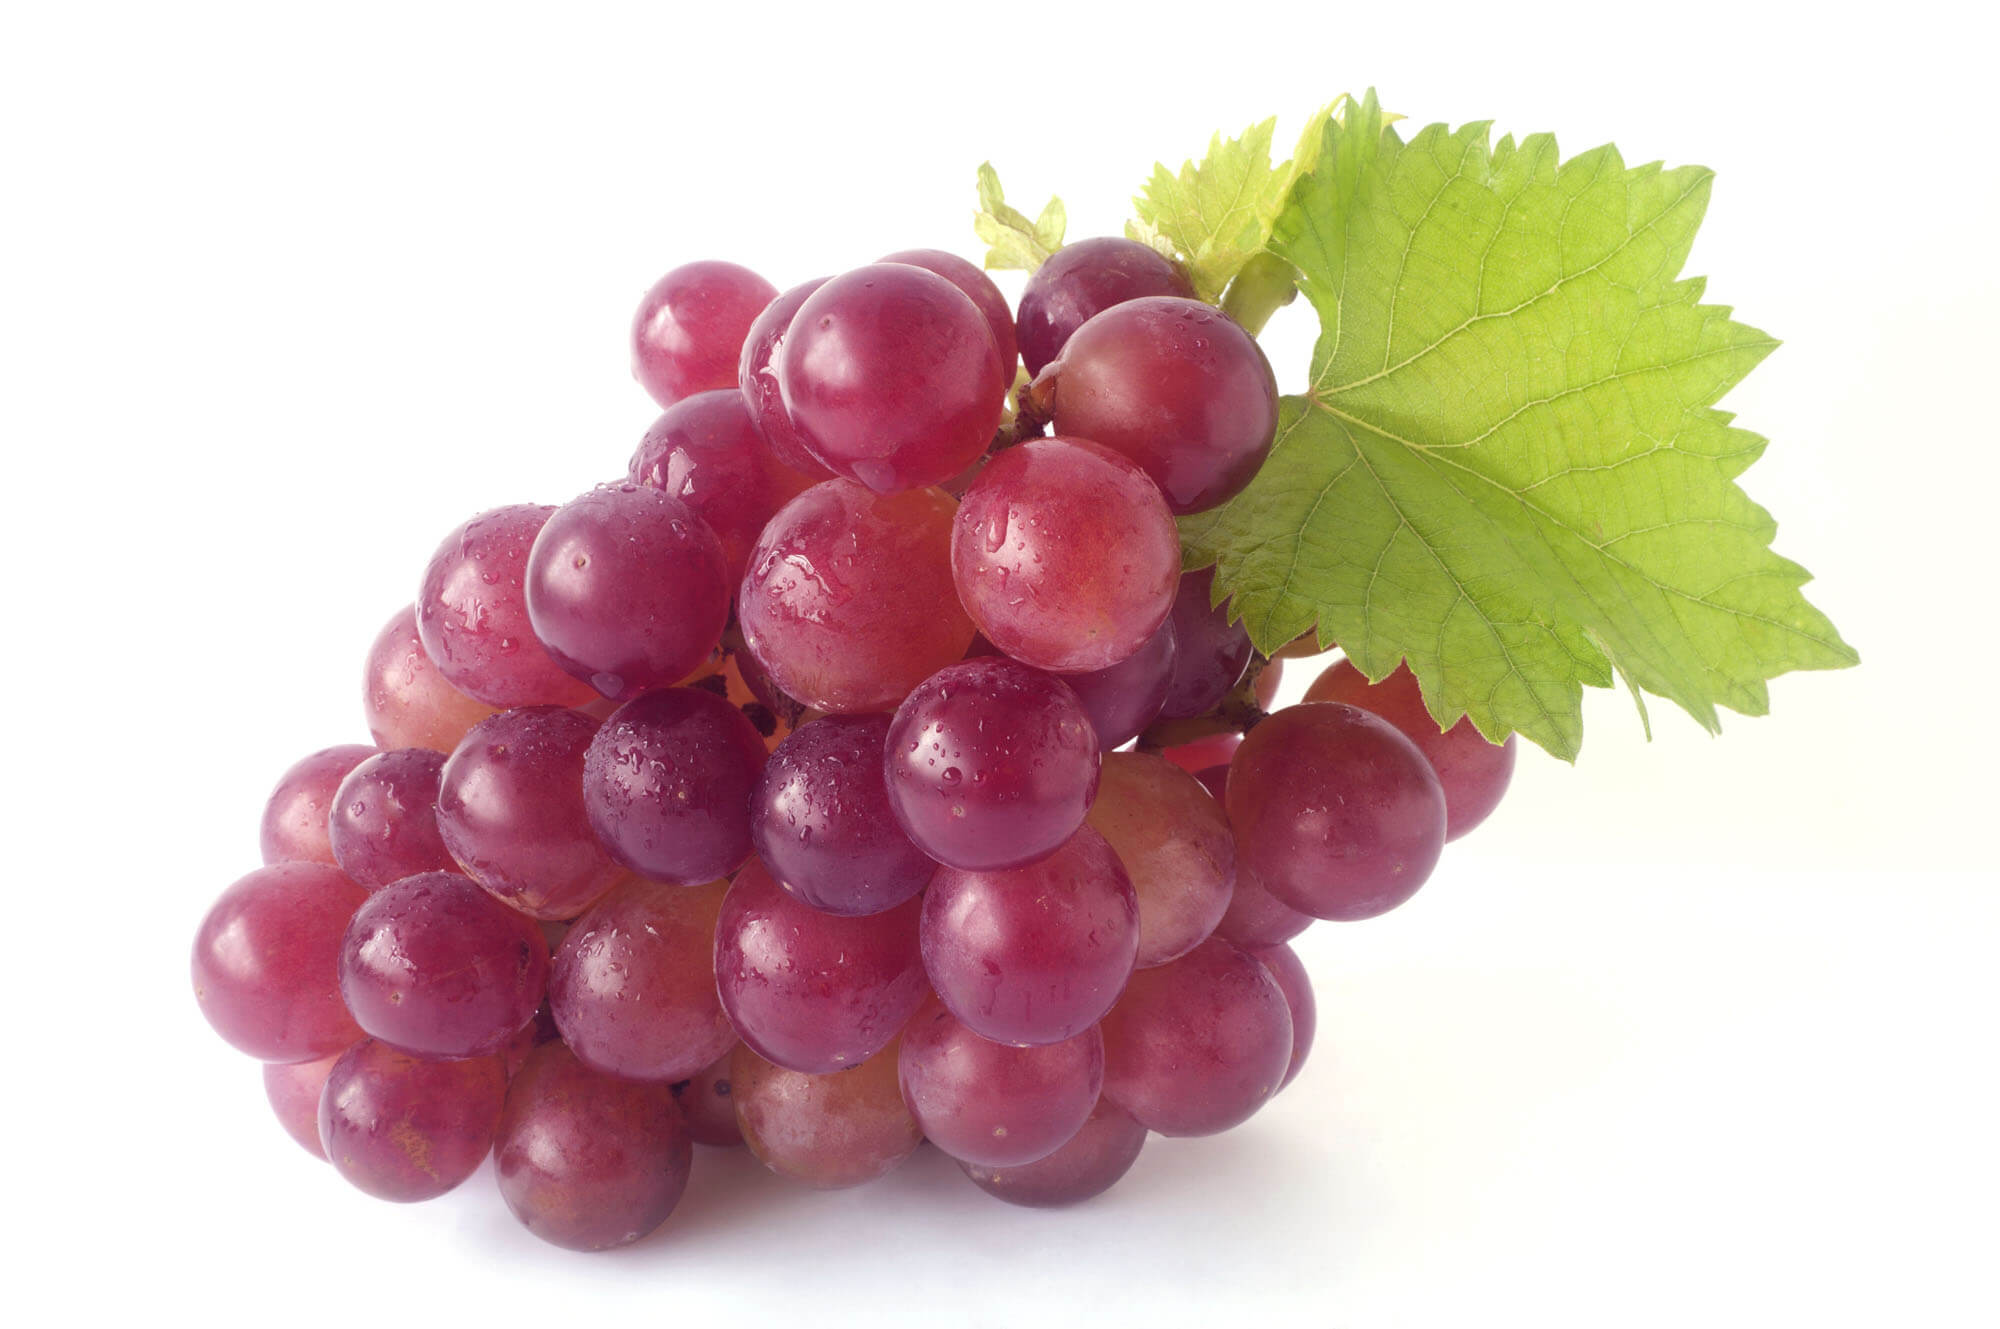 Benefici dell'uva nera